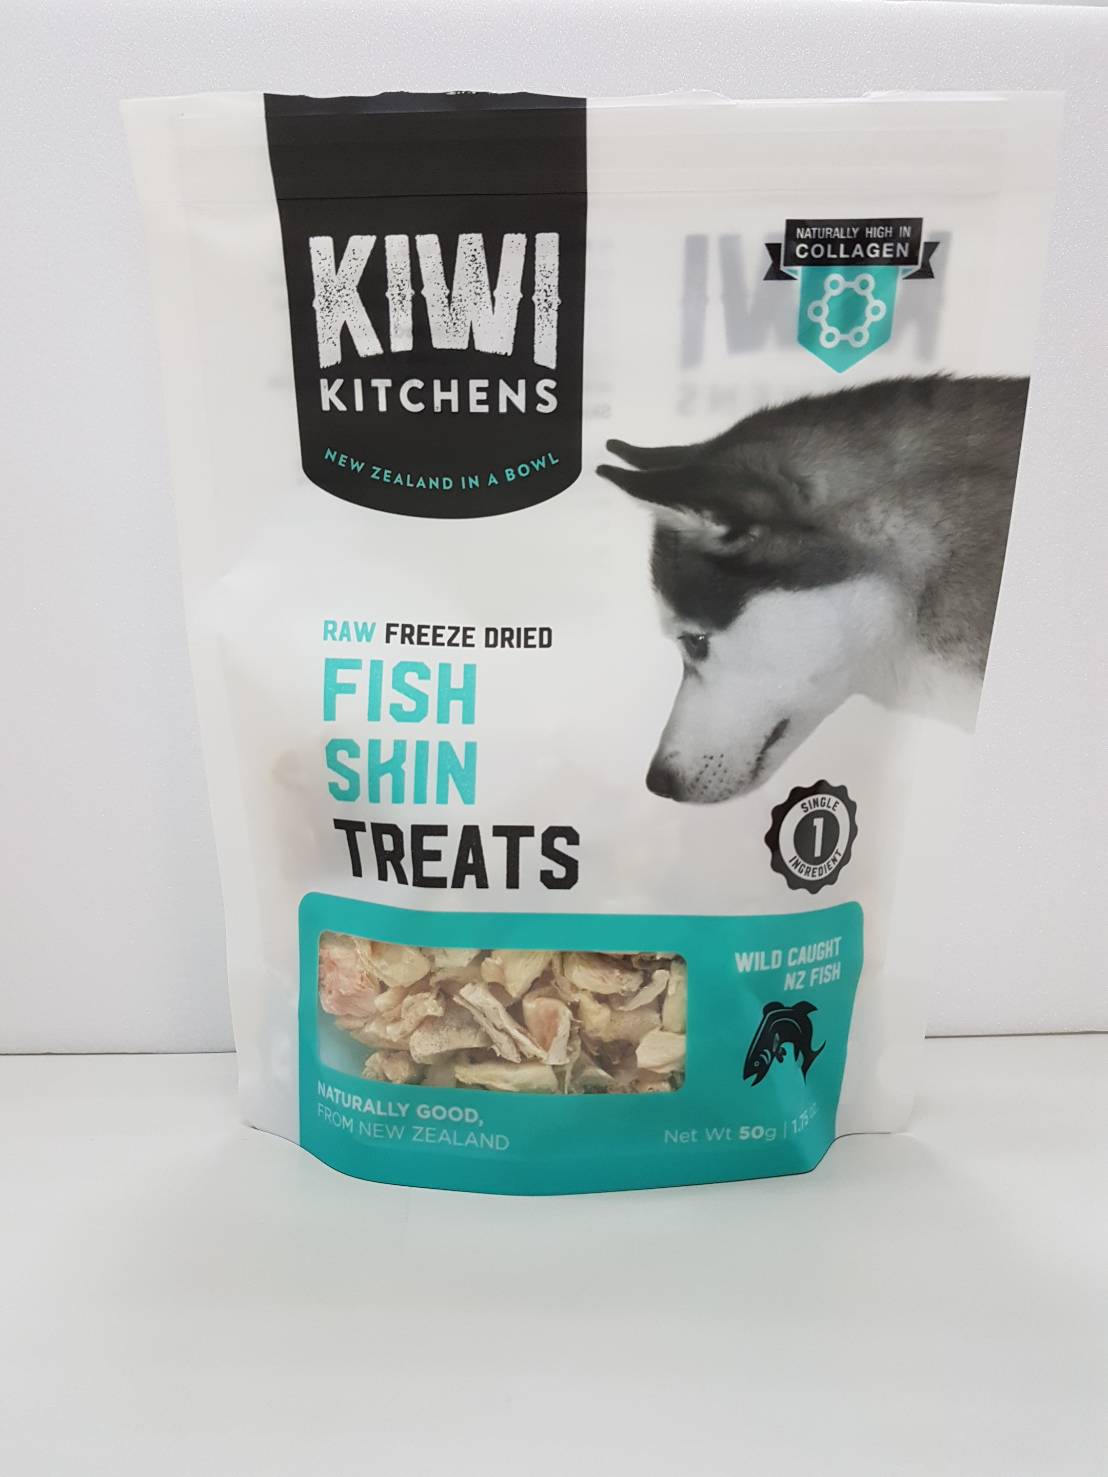 奇異廚房 純魚皮
Kiwi Kitchens Treat - Fish Skin